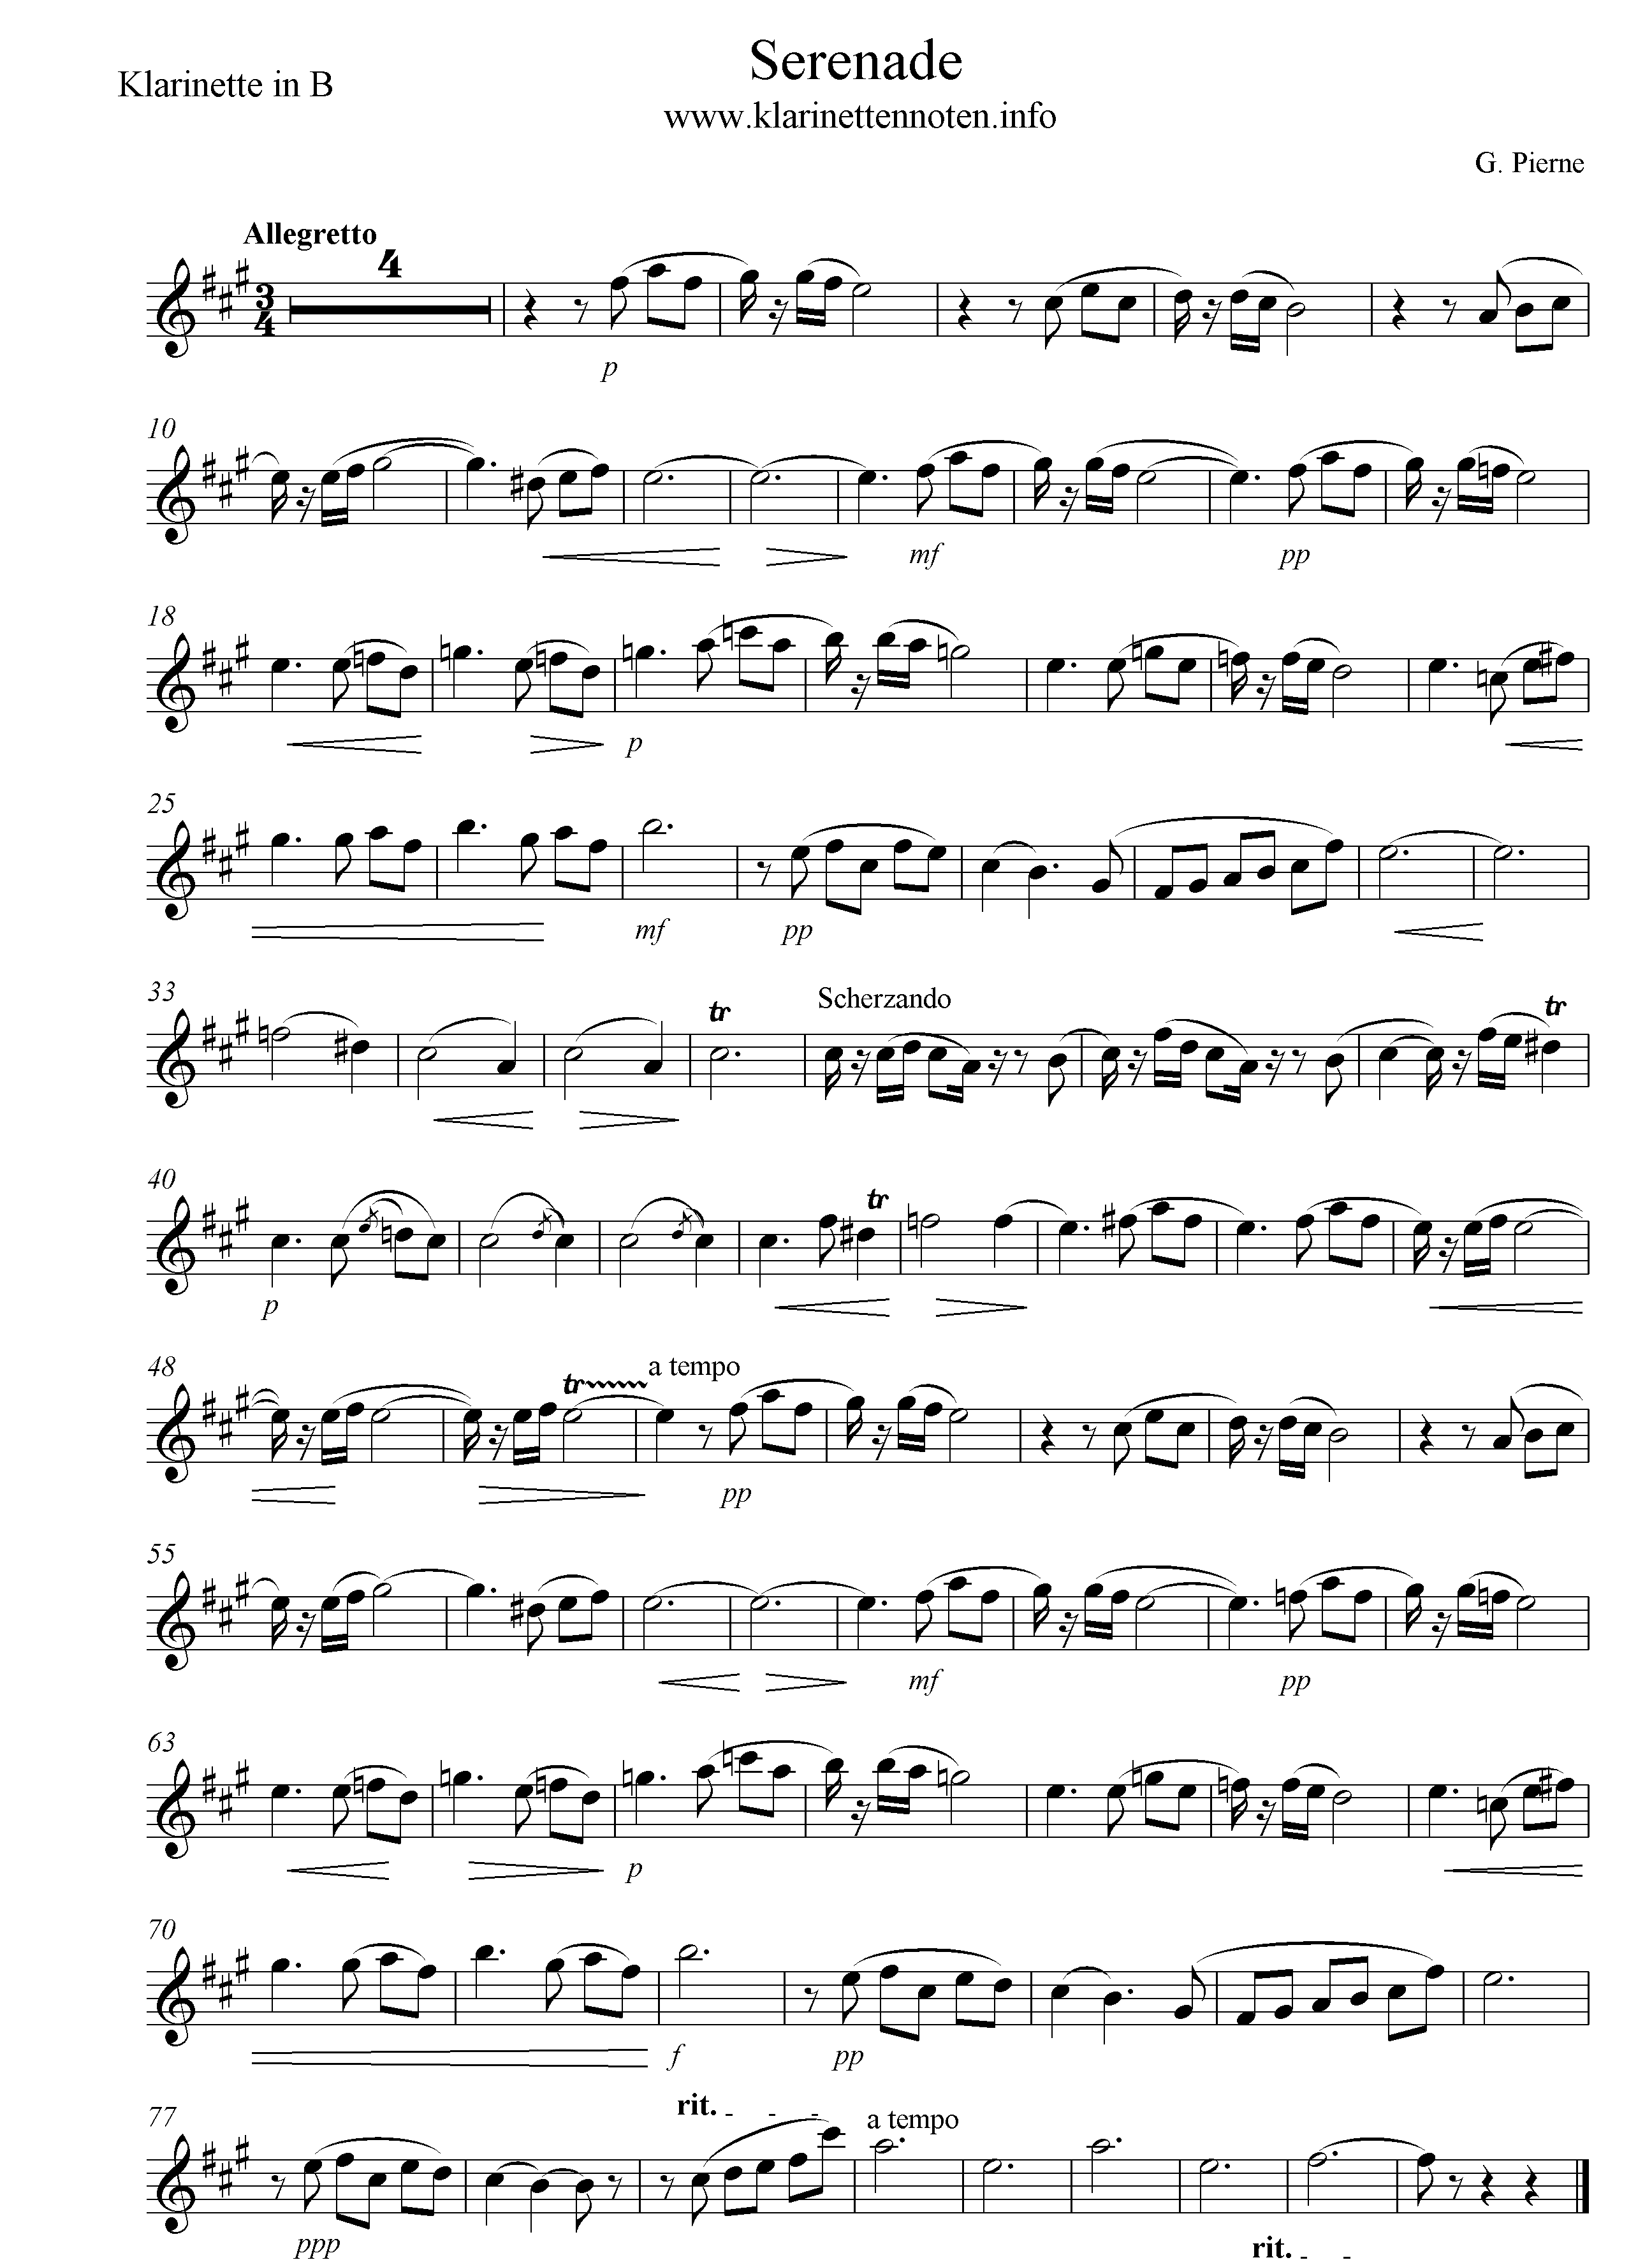 pierne Serenade solo Clarinet part